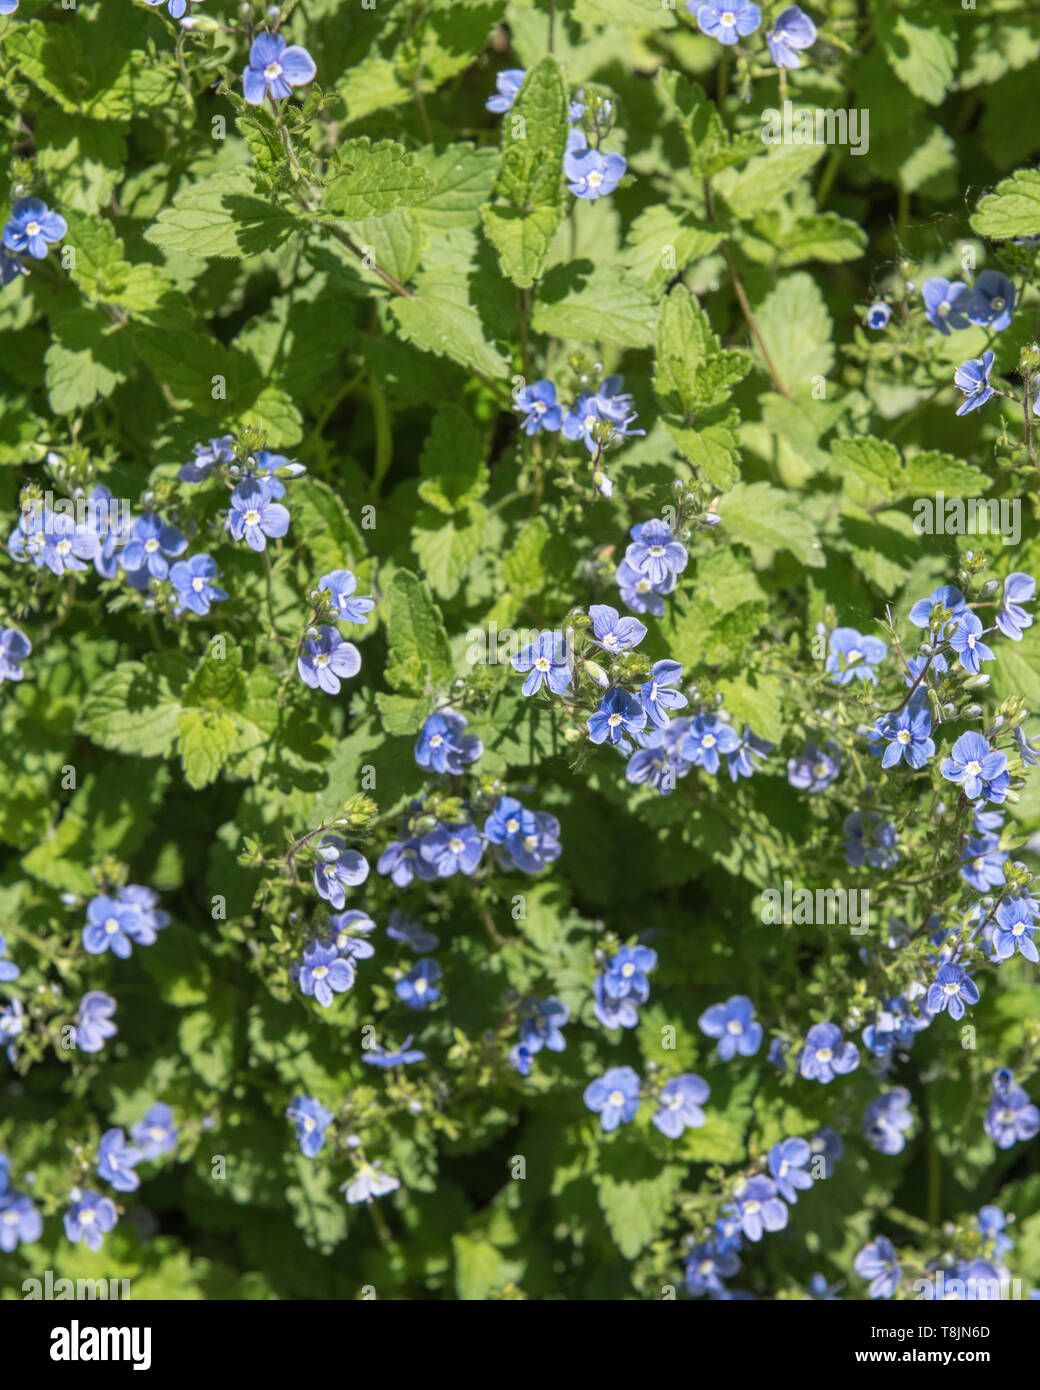 Patch des kleinen blauen Blüten von germander Speedwell/Veronica chamaedrys  im Sonnenschein. Früher als Heilpflanze in pflanzliche Heilmittel verwendet  Stockfotografie - Alamy